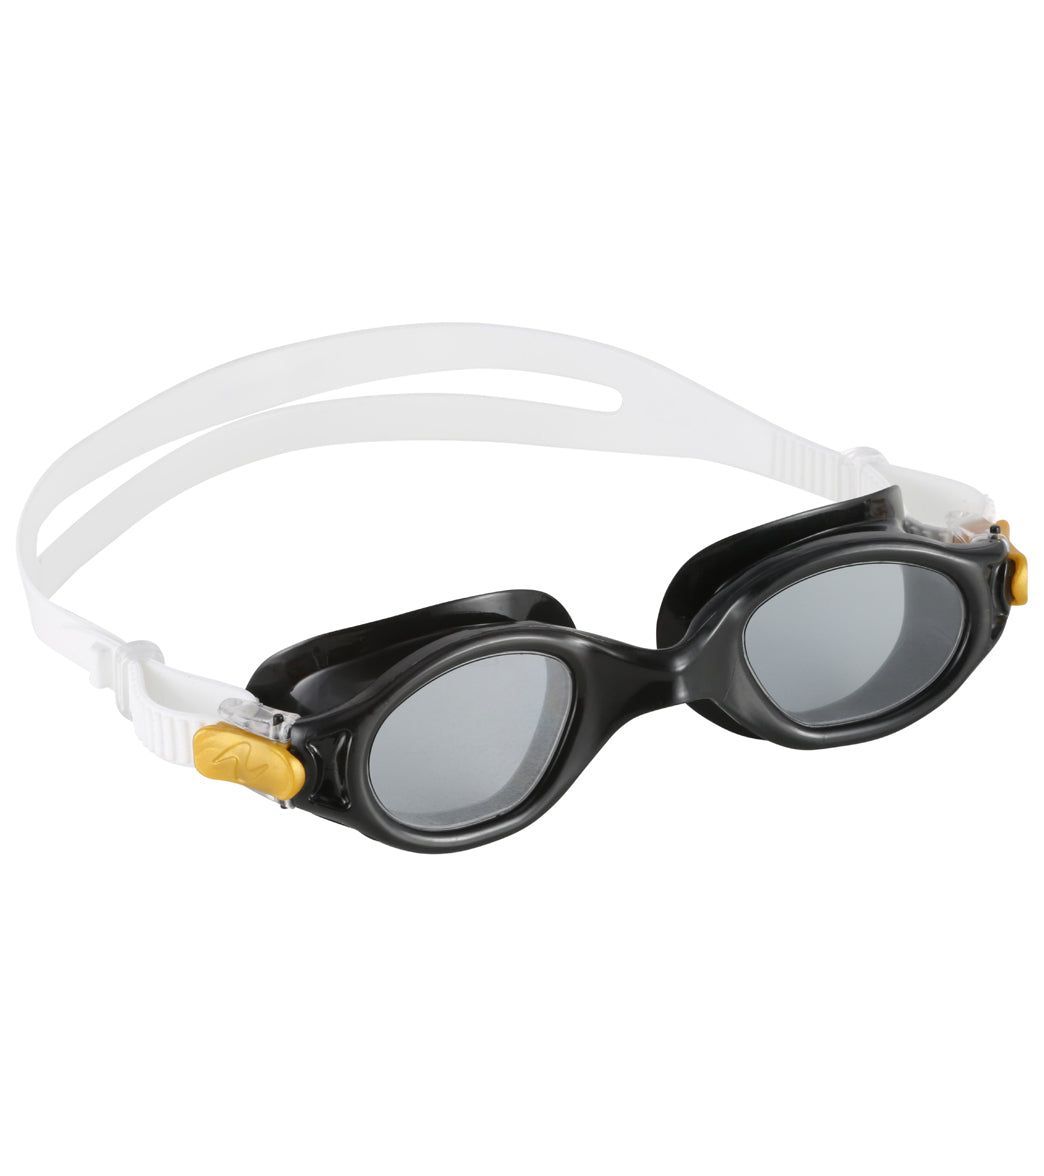 U.s. Divers Unisex Atlas Jr Goggle - Black/White - Swimoutlet.com